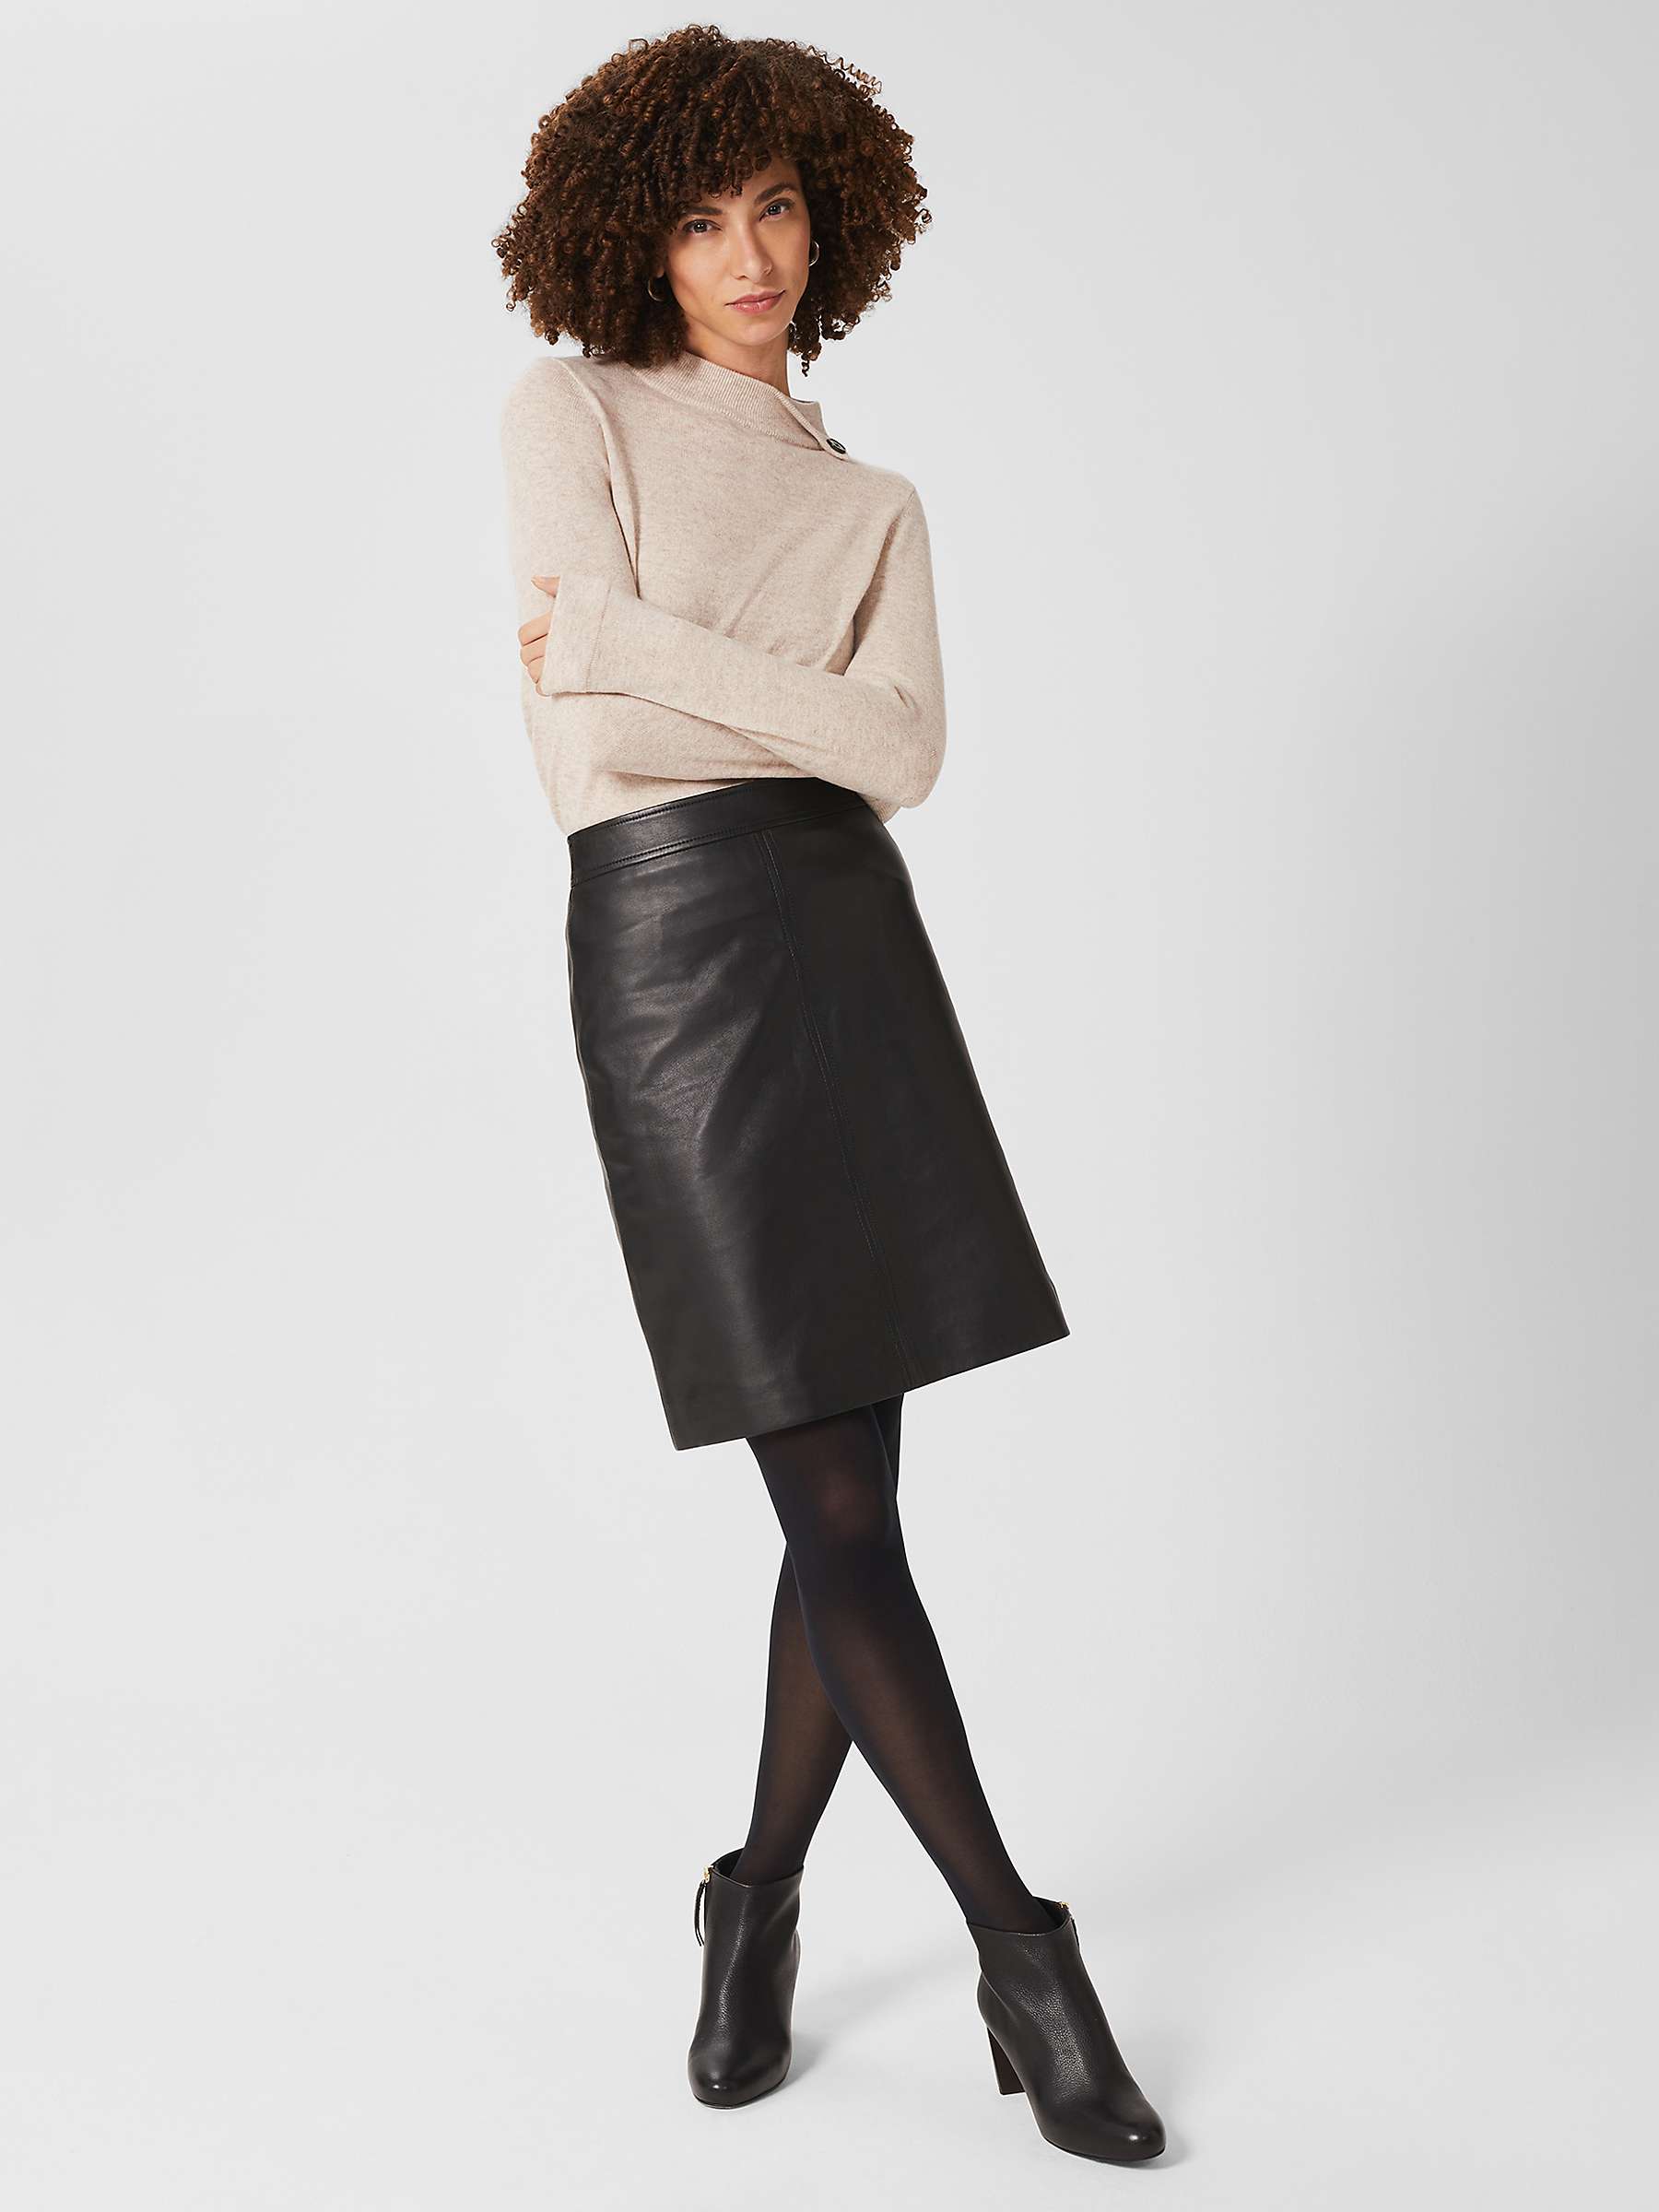 Buy Hobbs Annalise Leather Skirt, Black Online at johnlewis.com